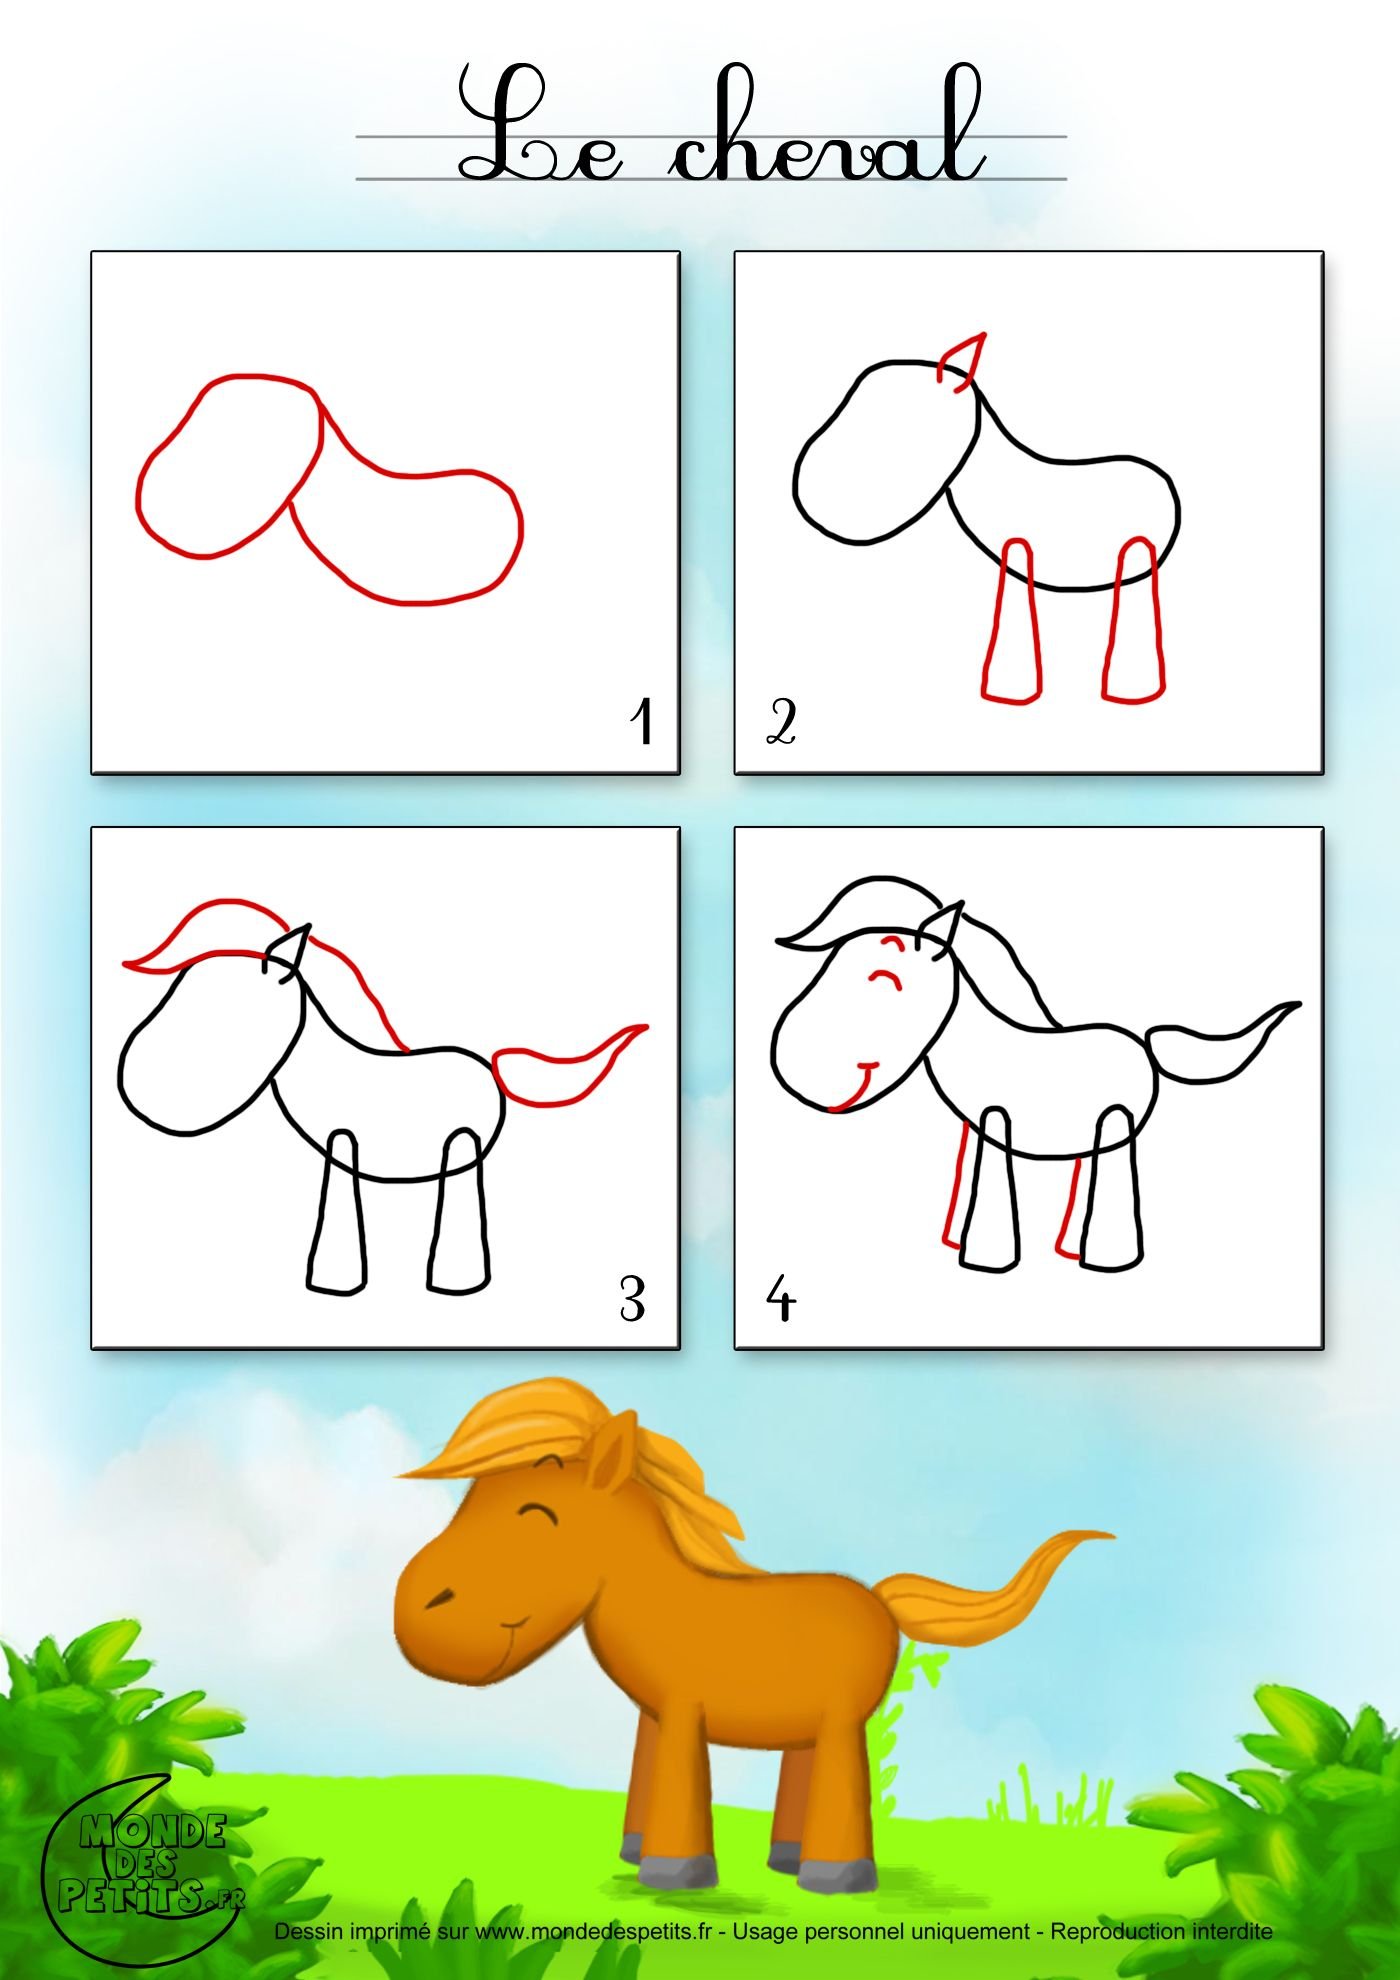 Лошадь для рисования детям